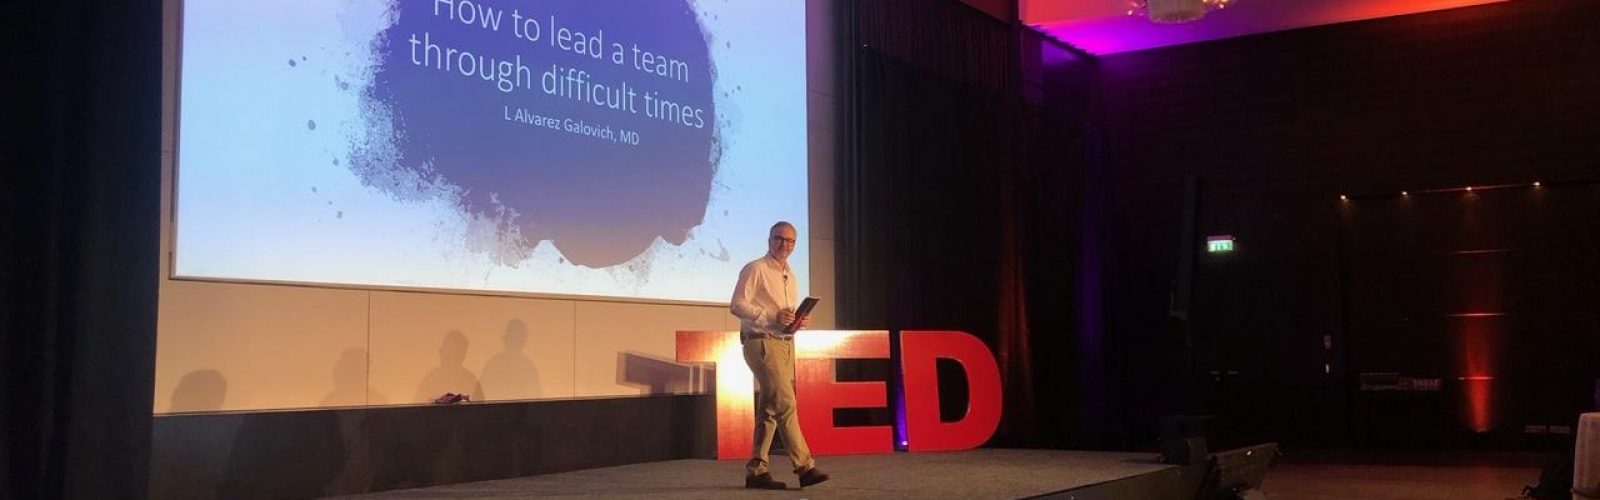 conferencia TED Dr. Galovich